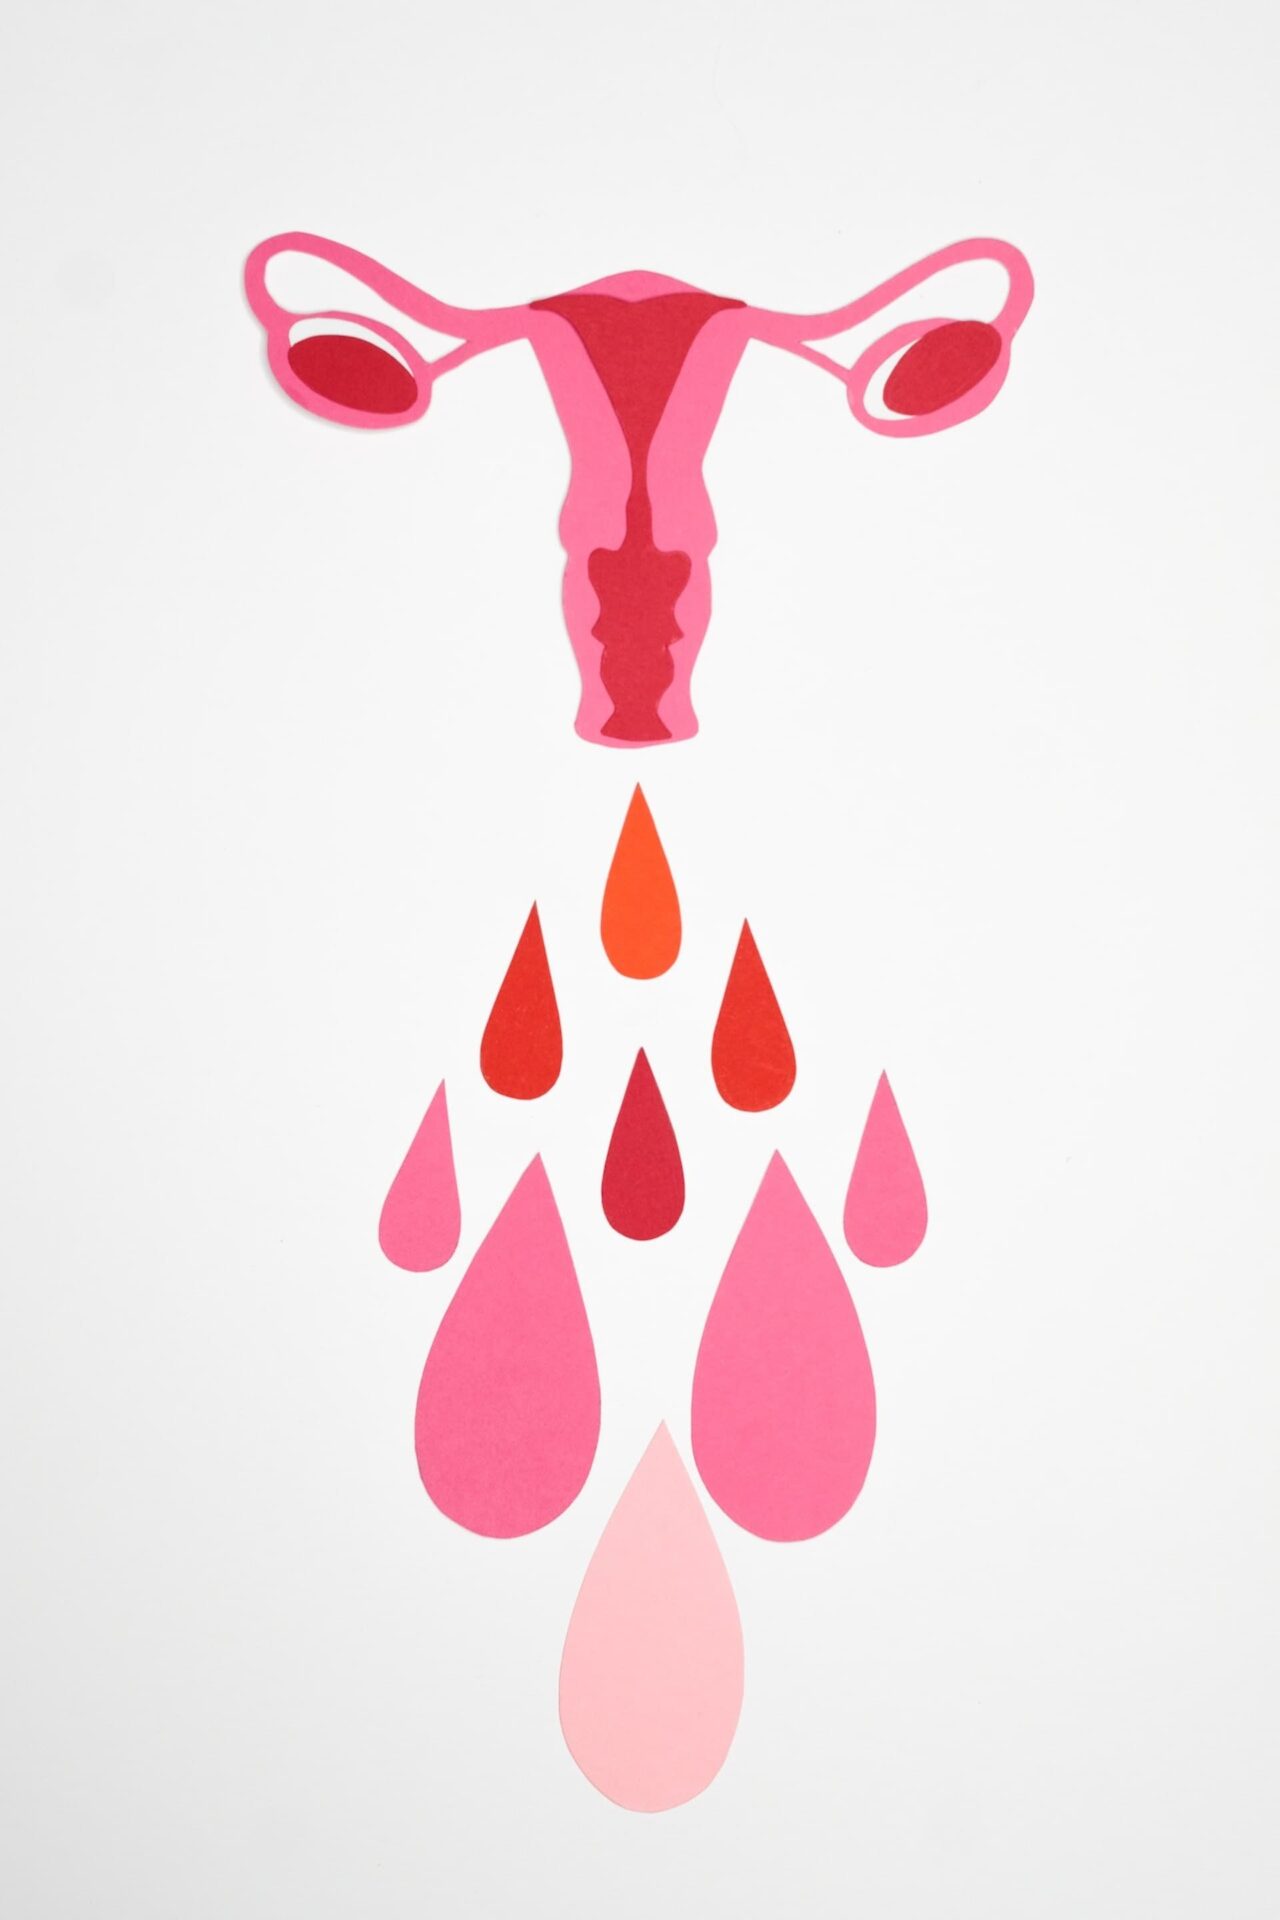 endometriosis despues de la menopausia